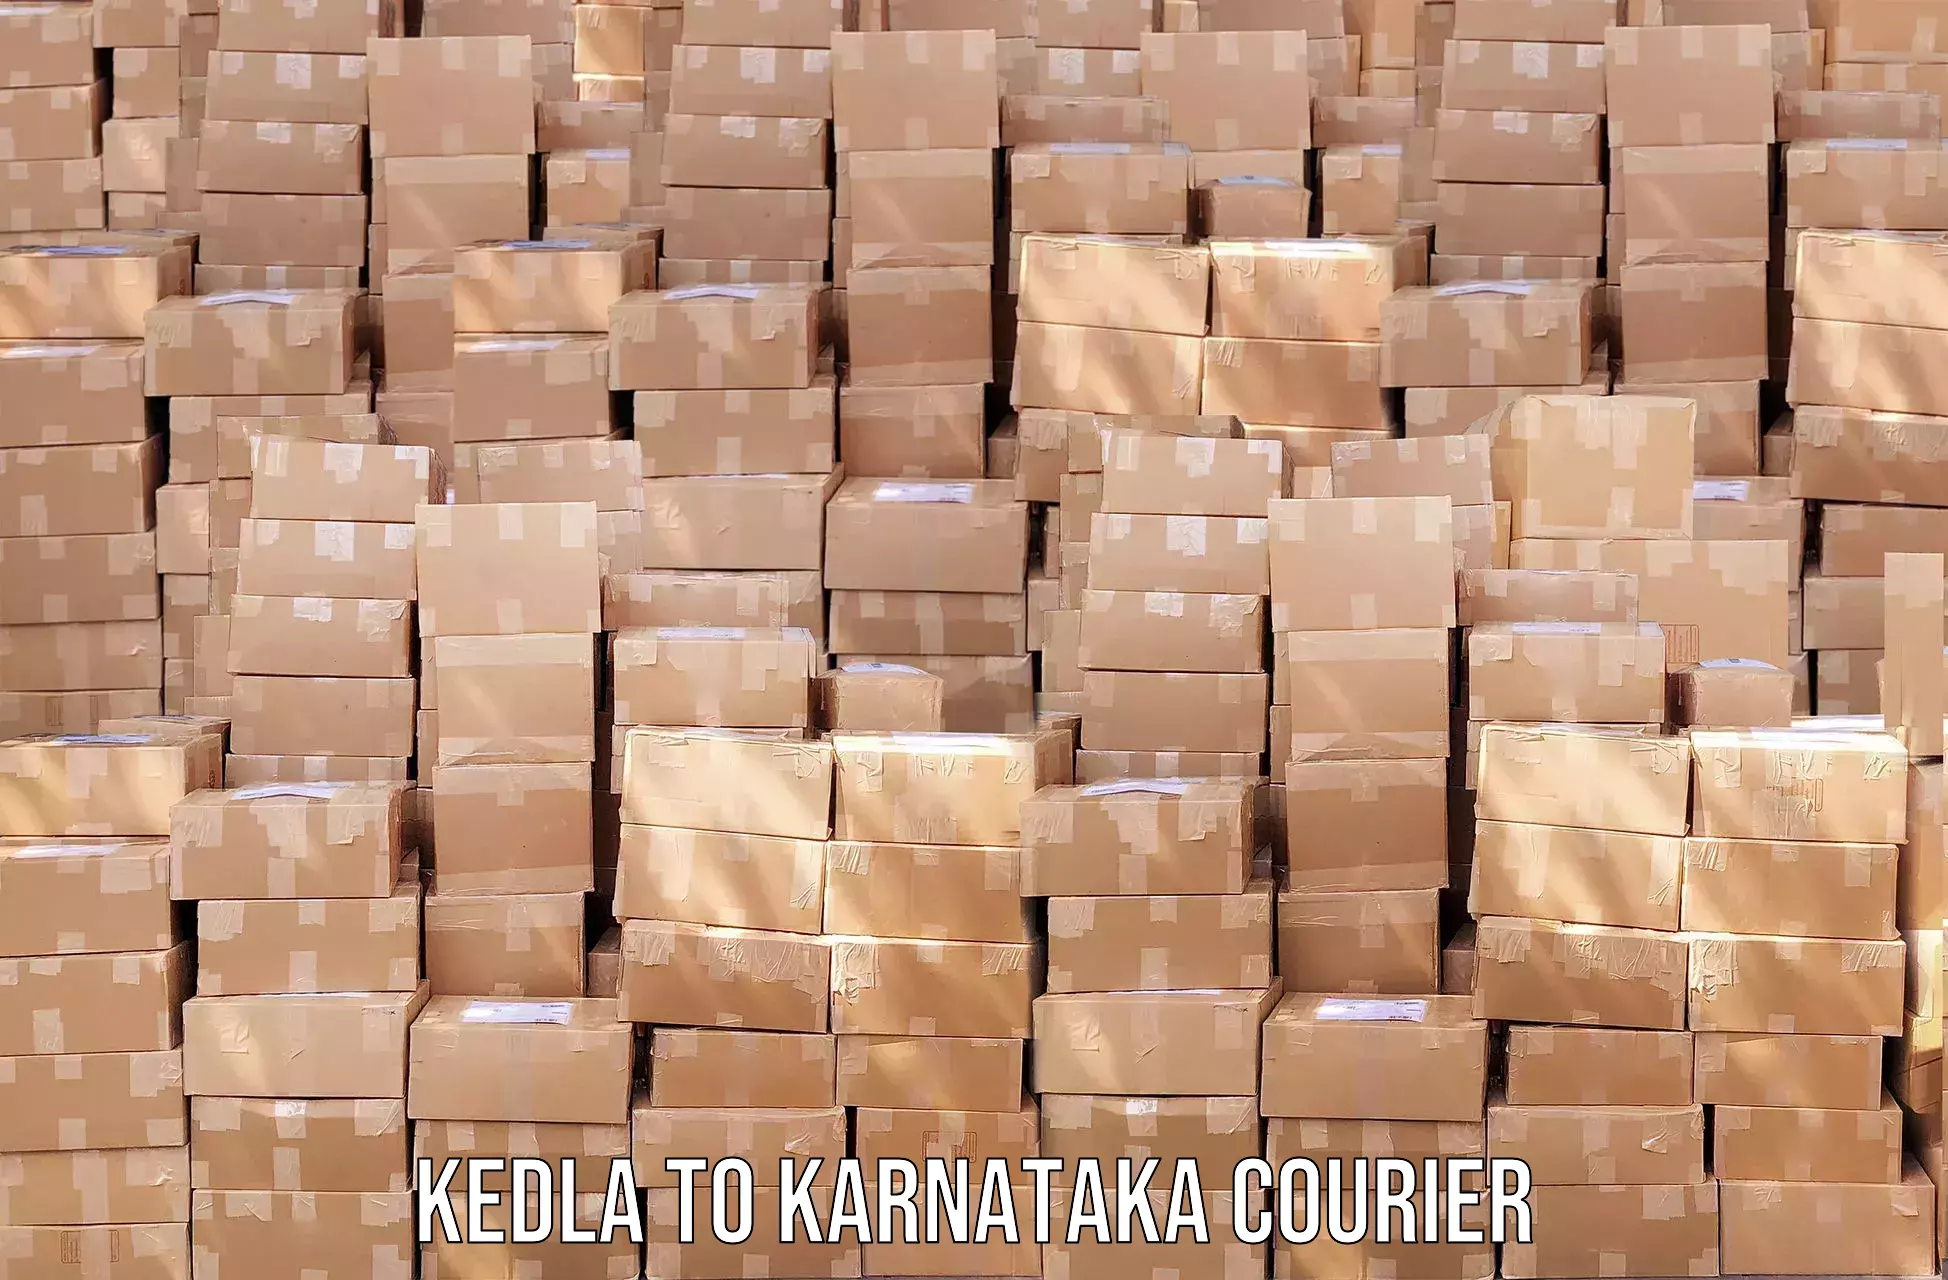 Tracking updates Kedla to Kanjarakatte